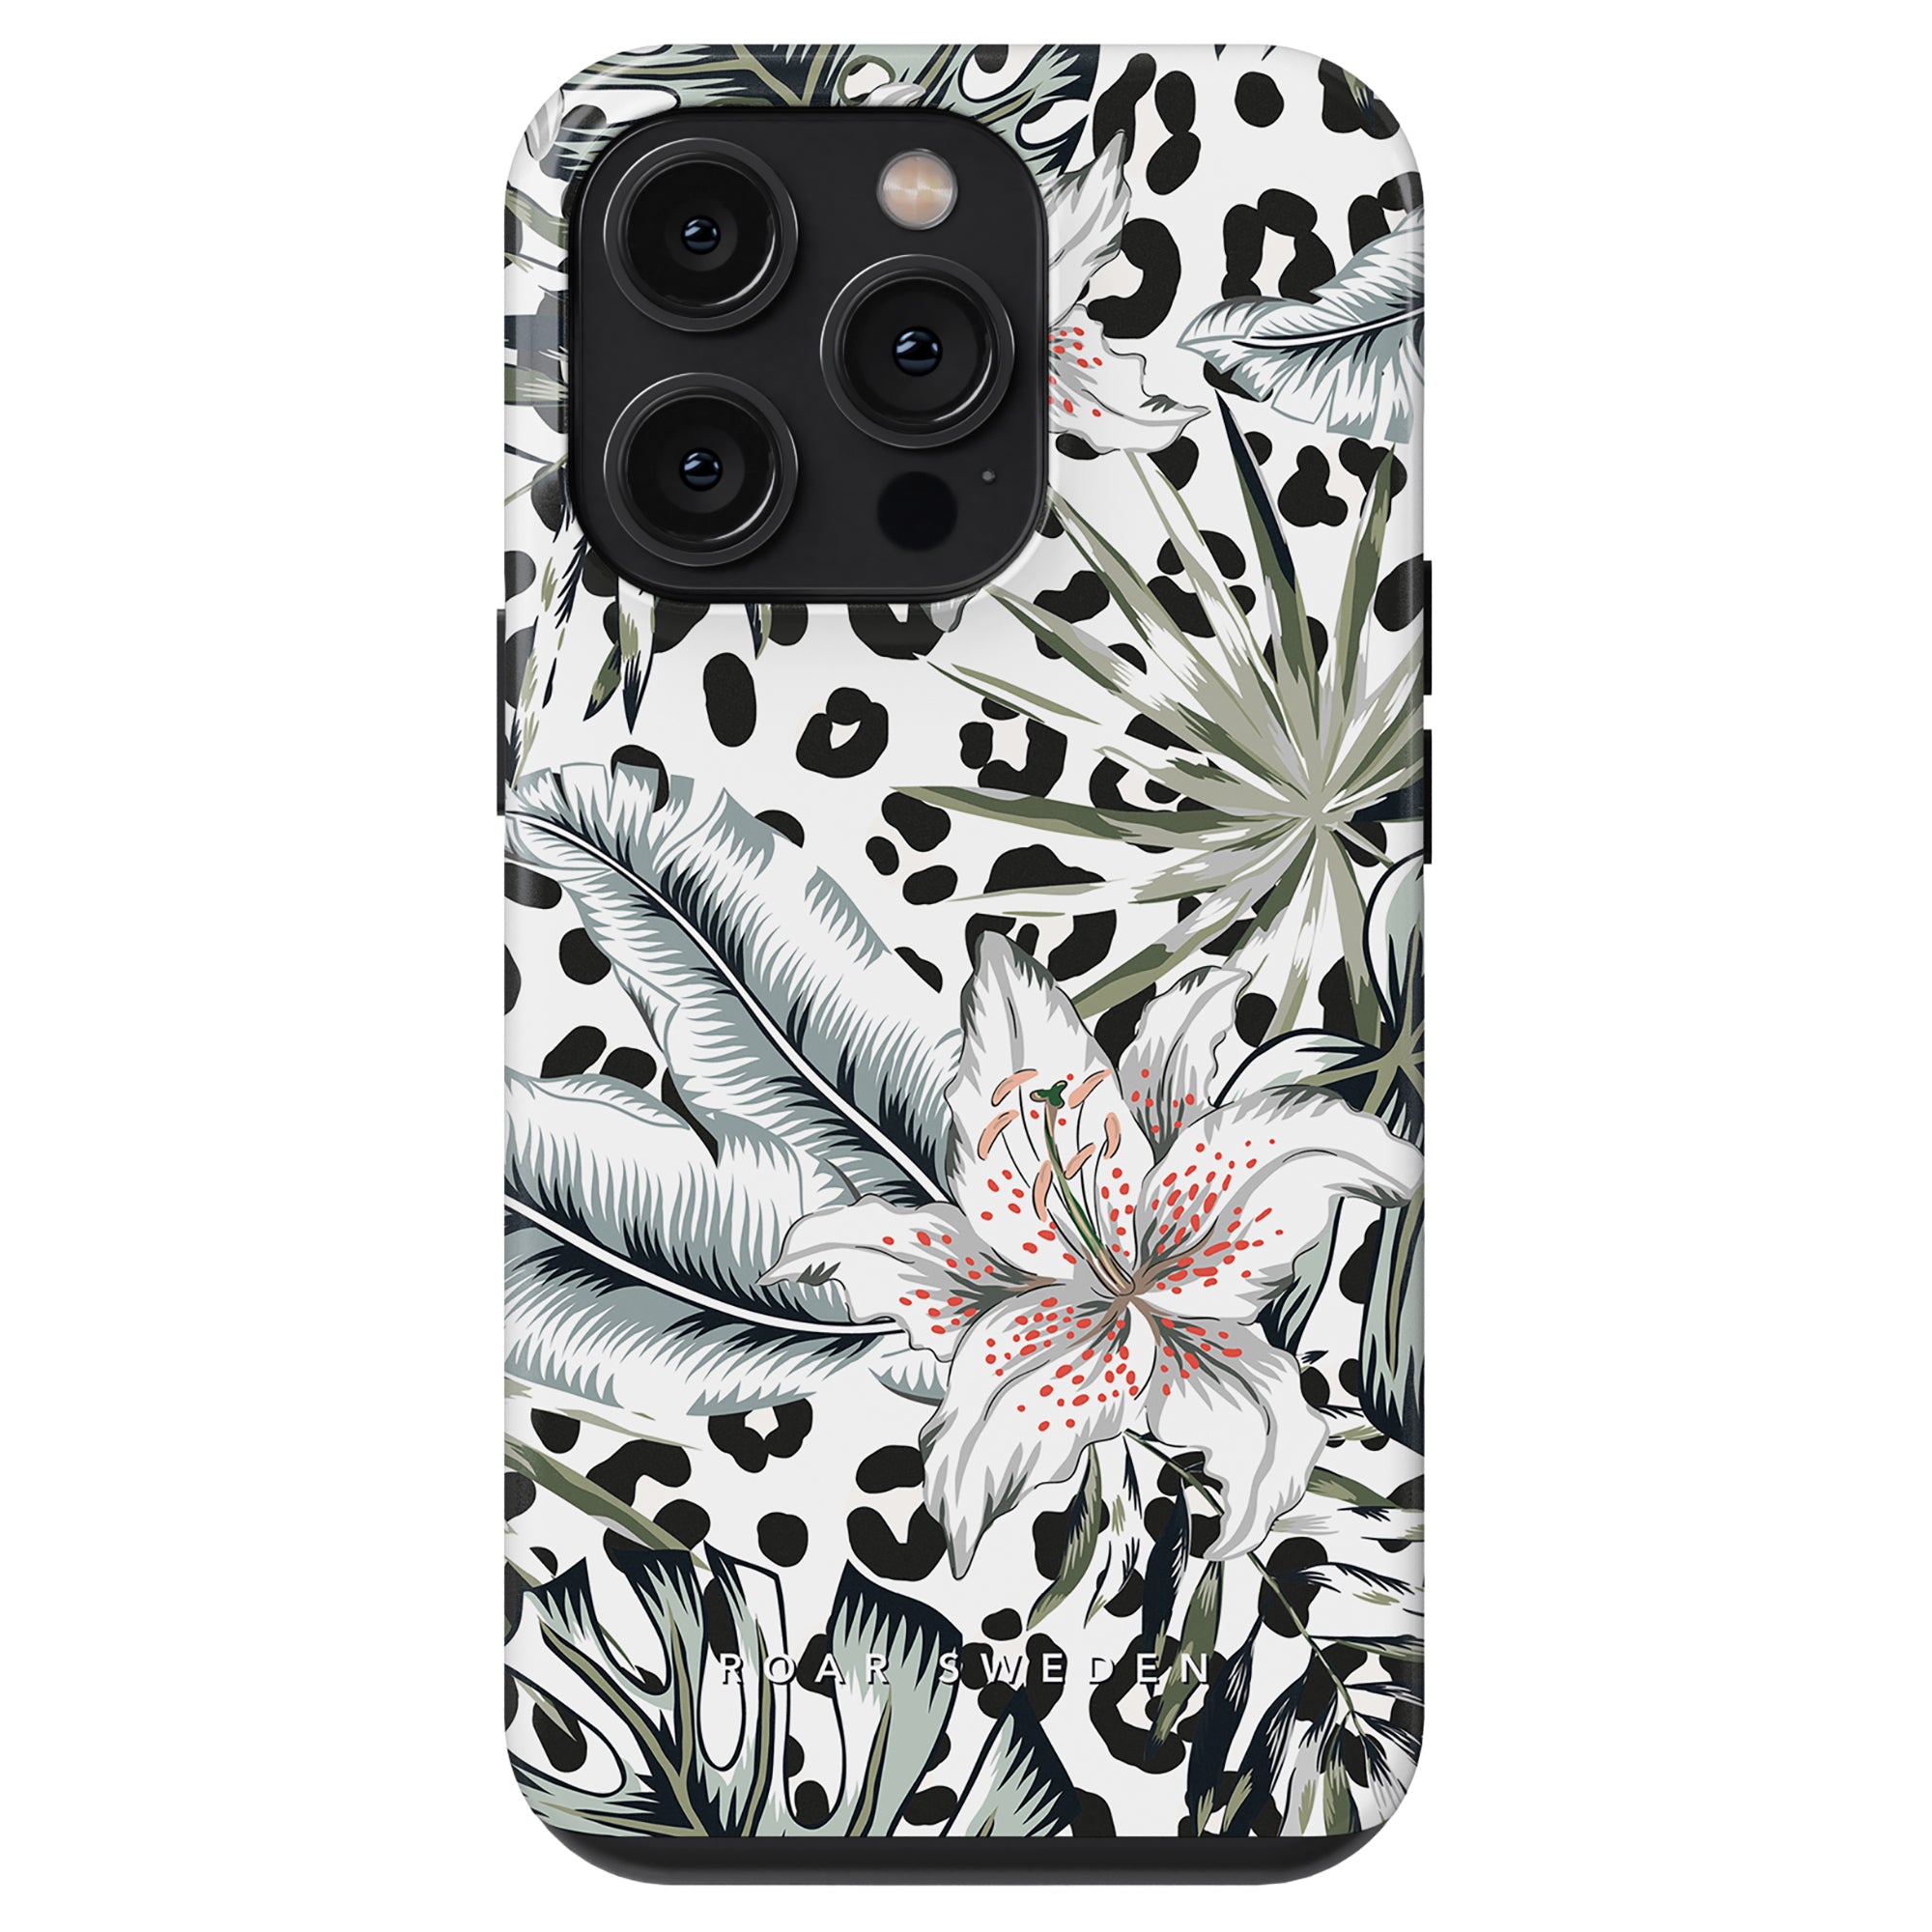 Ett svart och vitt leopardmönstrat Lily - Tufft fodral för iPhone 11.